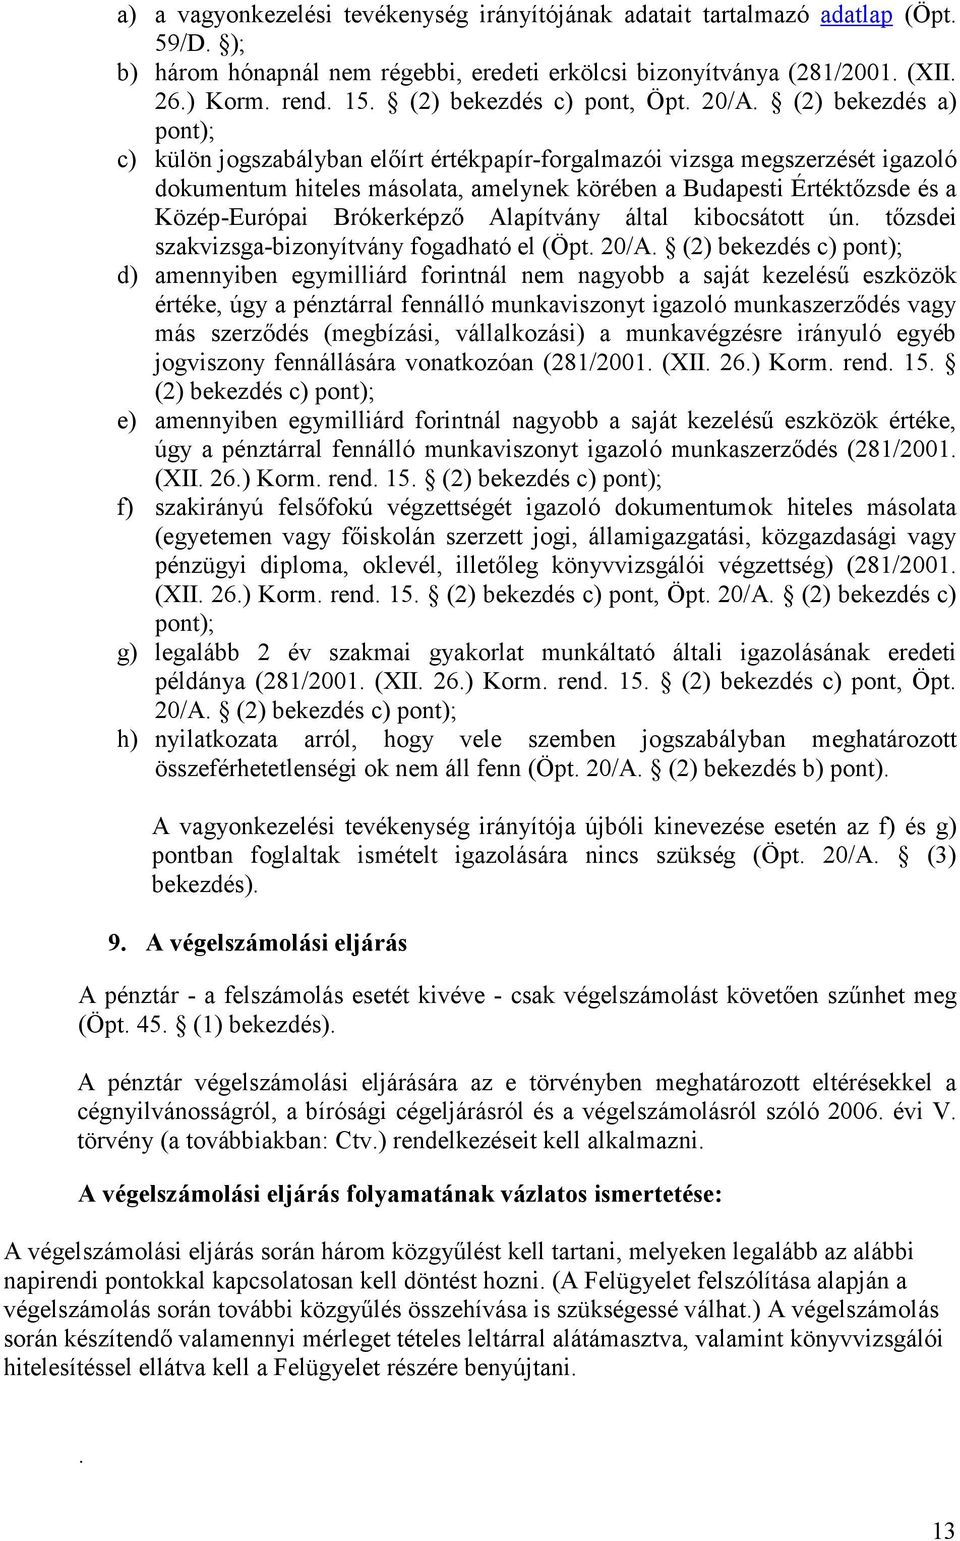 (2) bekezdés a) pont); c) külön jogszabályban elıírt értékpapír-forgalmazói vizsga megszerzését igazoló dokumentum hiteles másolata, amelynek körében a Budapesti Értéktızsde és a Közép-Európai